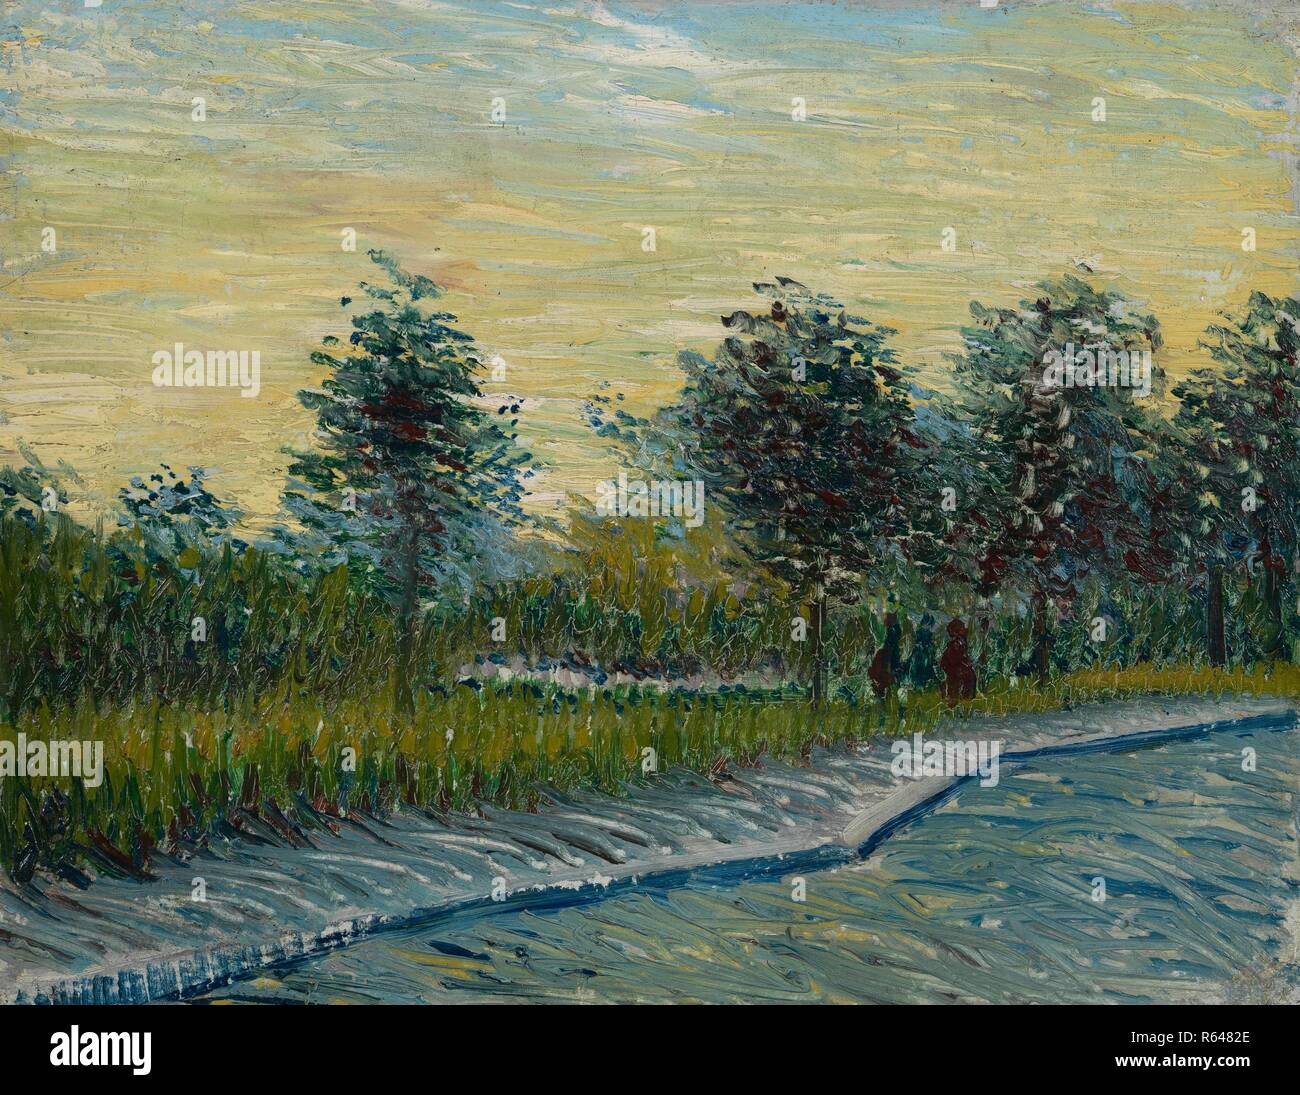 Square Saint-Pierre at Sunset. Date: May 1887, Paris. Dimensions: 33.0 cm x 42.0 cm, 47.9 cm x 57.0 cm. Museum: Van Gogh Museum, Amsterdam. Author: VAN GOGH, VINCENT. VINCENT VAN GOGH. Stock Photo